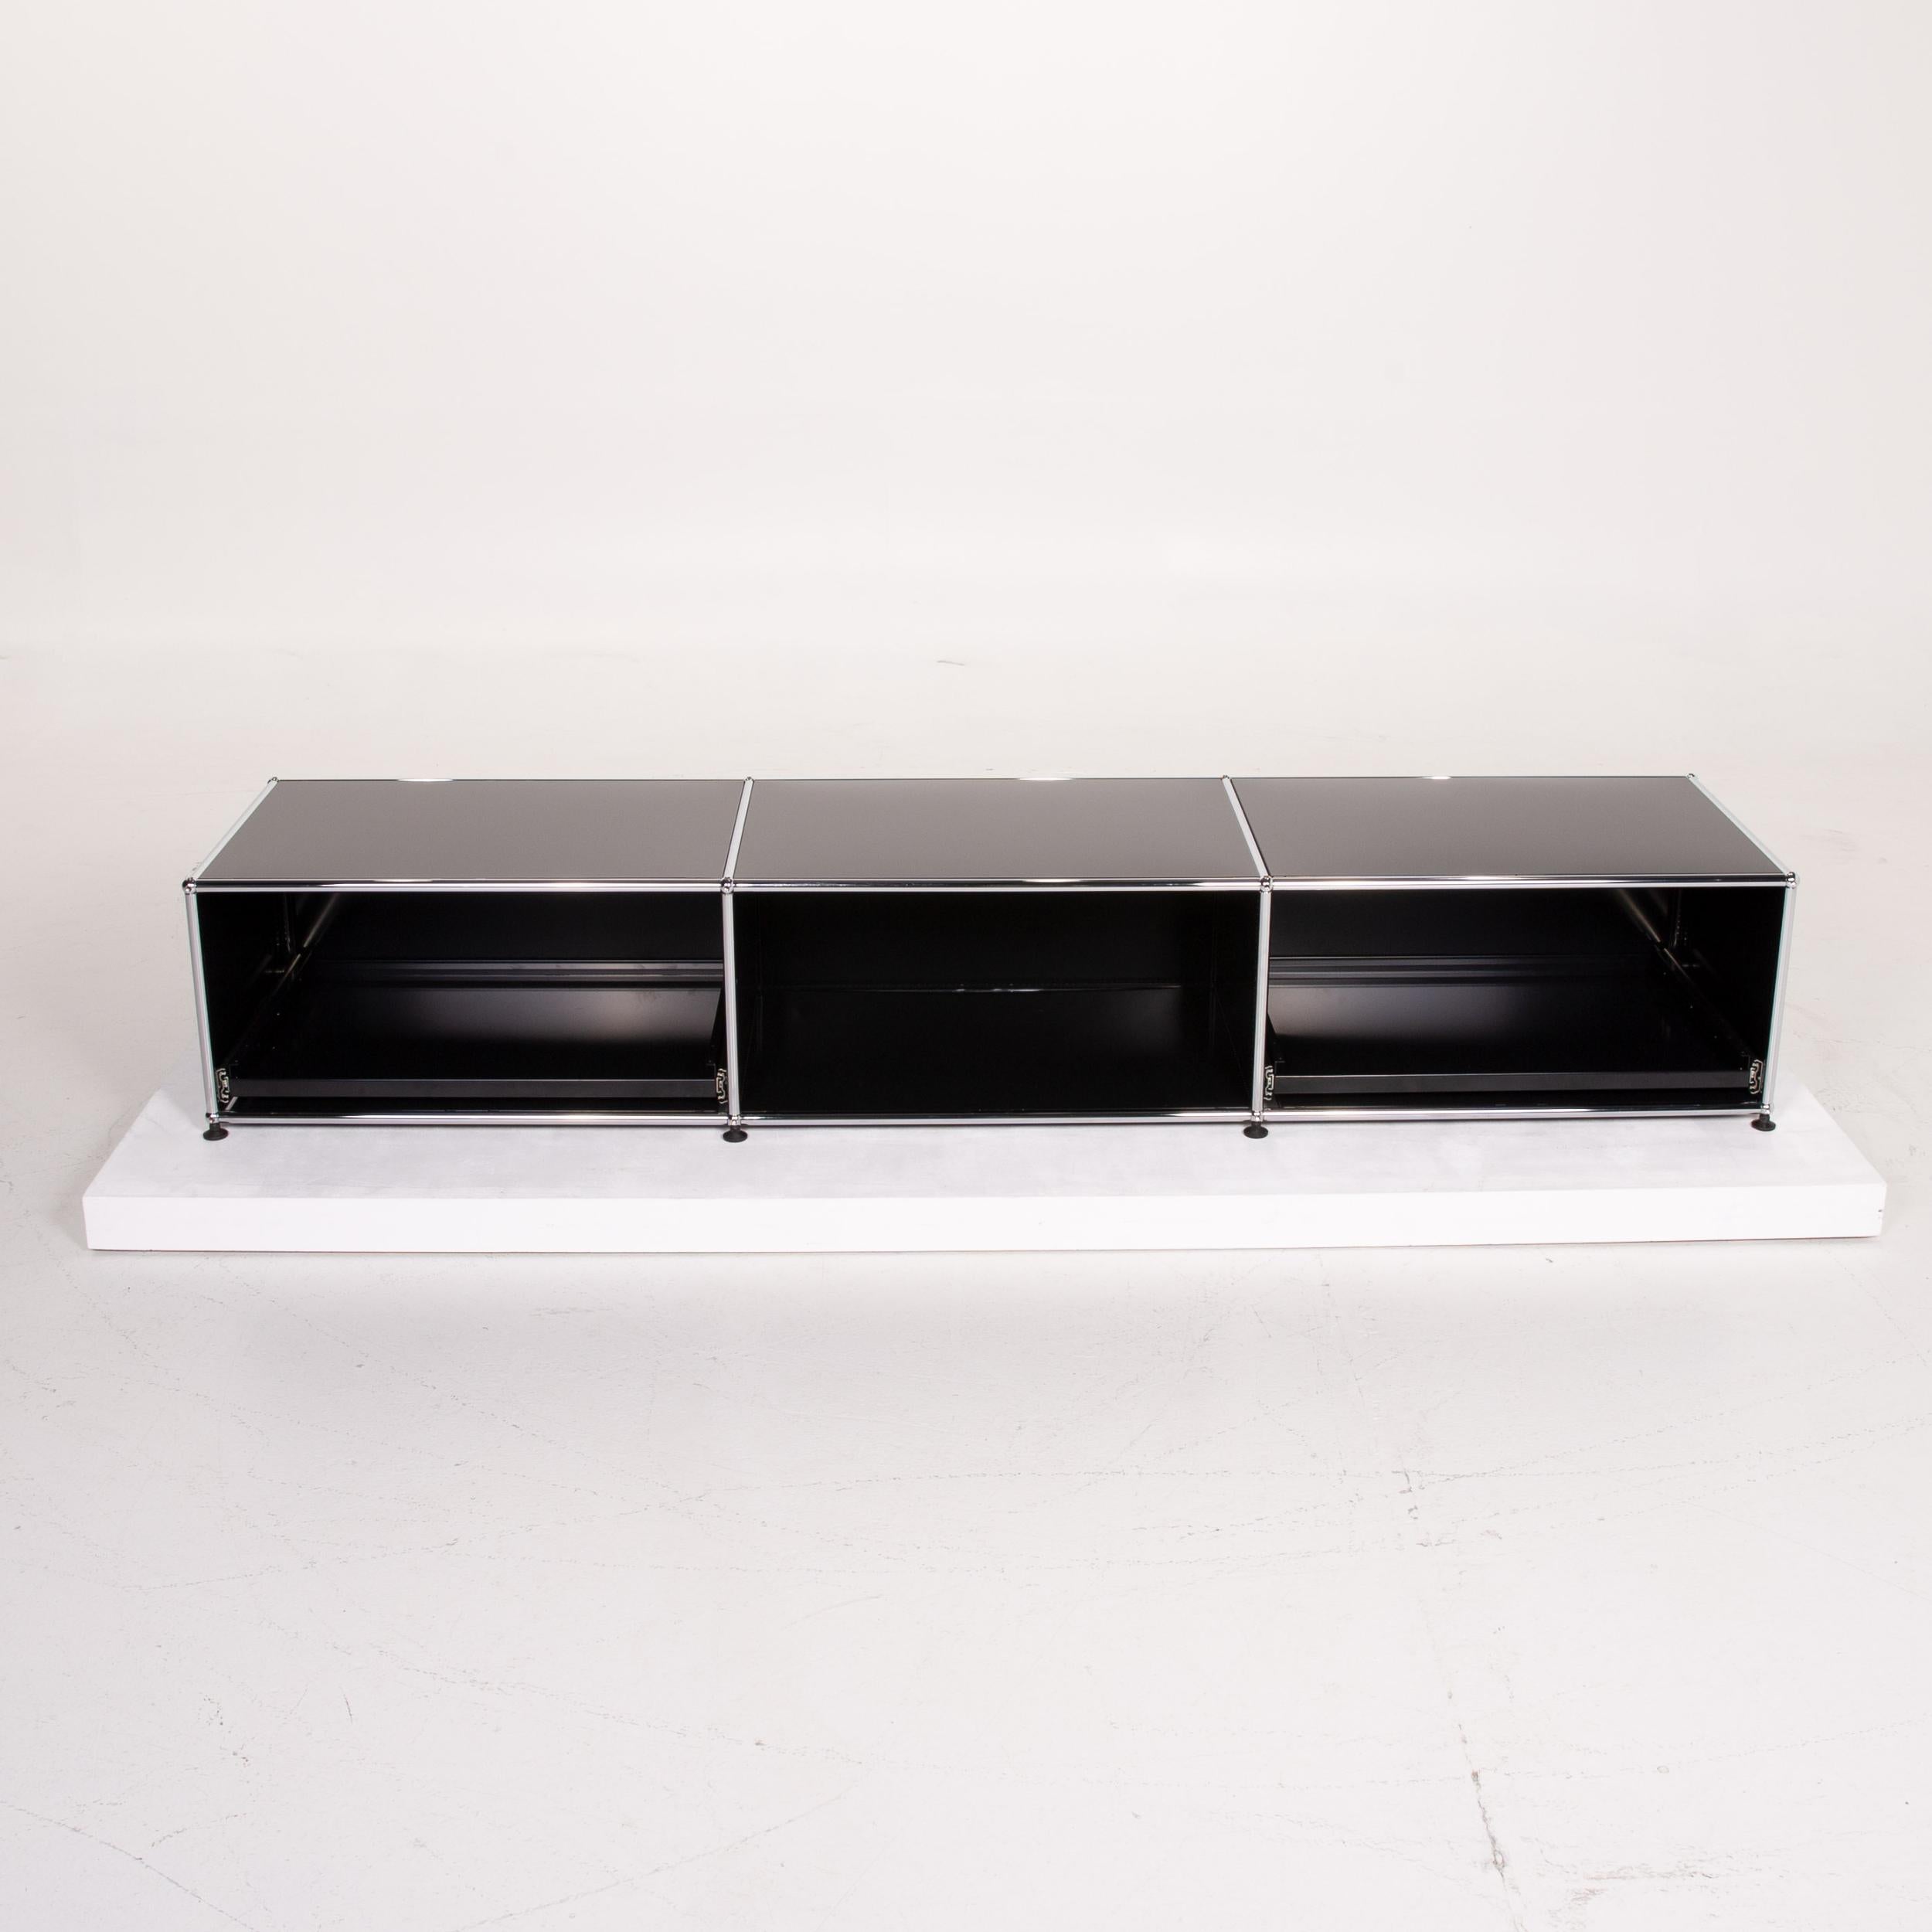 USM Haller Metal Sideboard Black Office Furniture Shelf Lowboard Modular 1